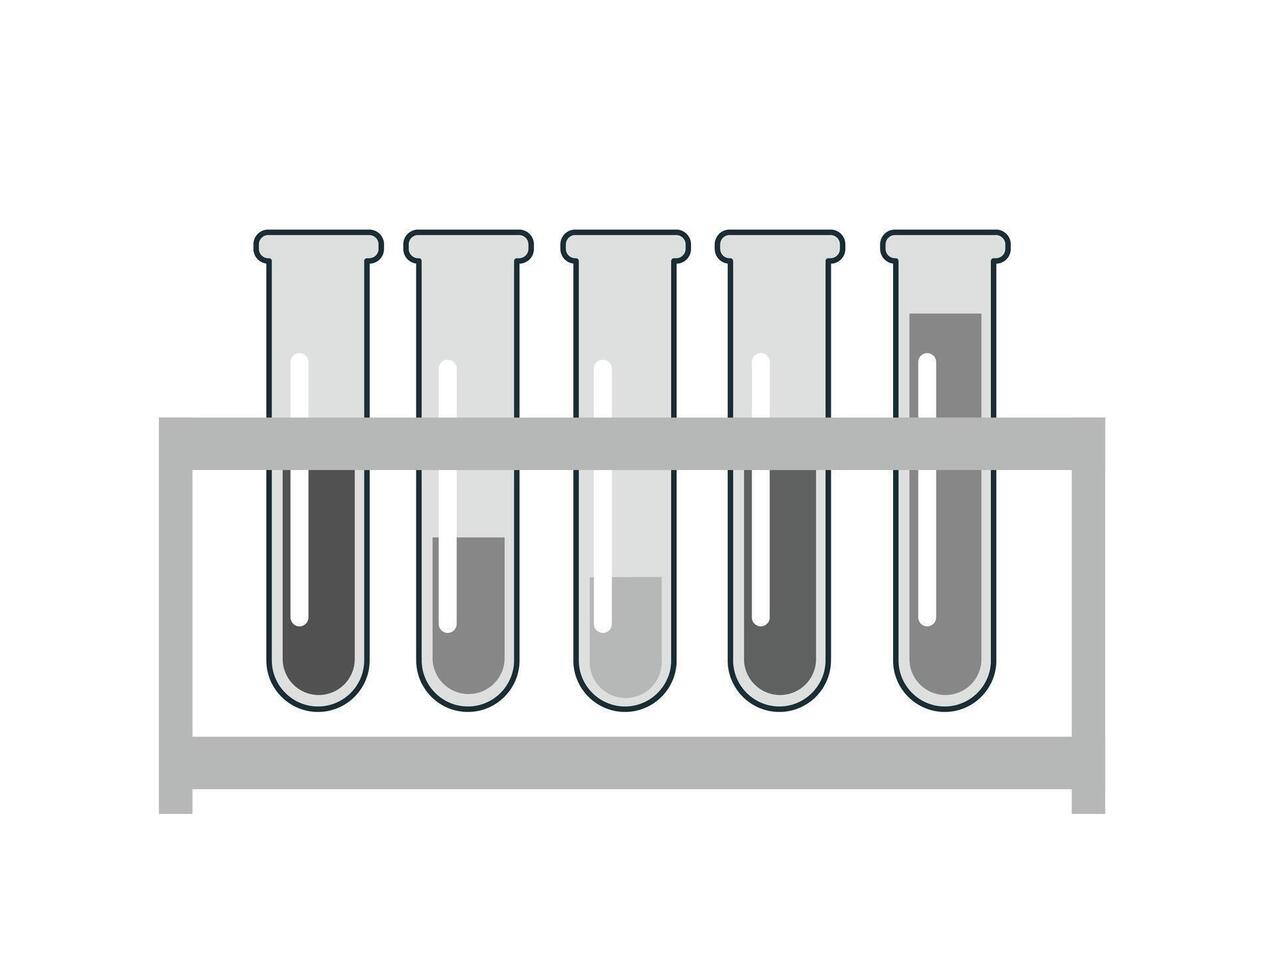 test buizen met kleurrijk vloeistoffen in houder Aan wit achtergrond. chemisch uitrusting voor experimenten. vector illustratie in een vlak stijl.